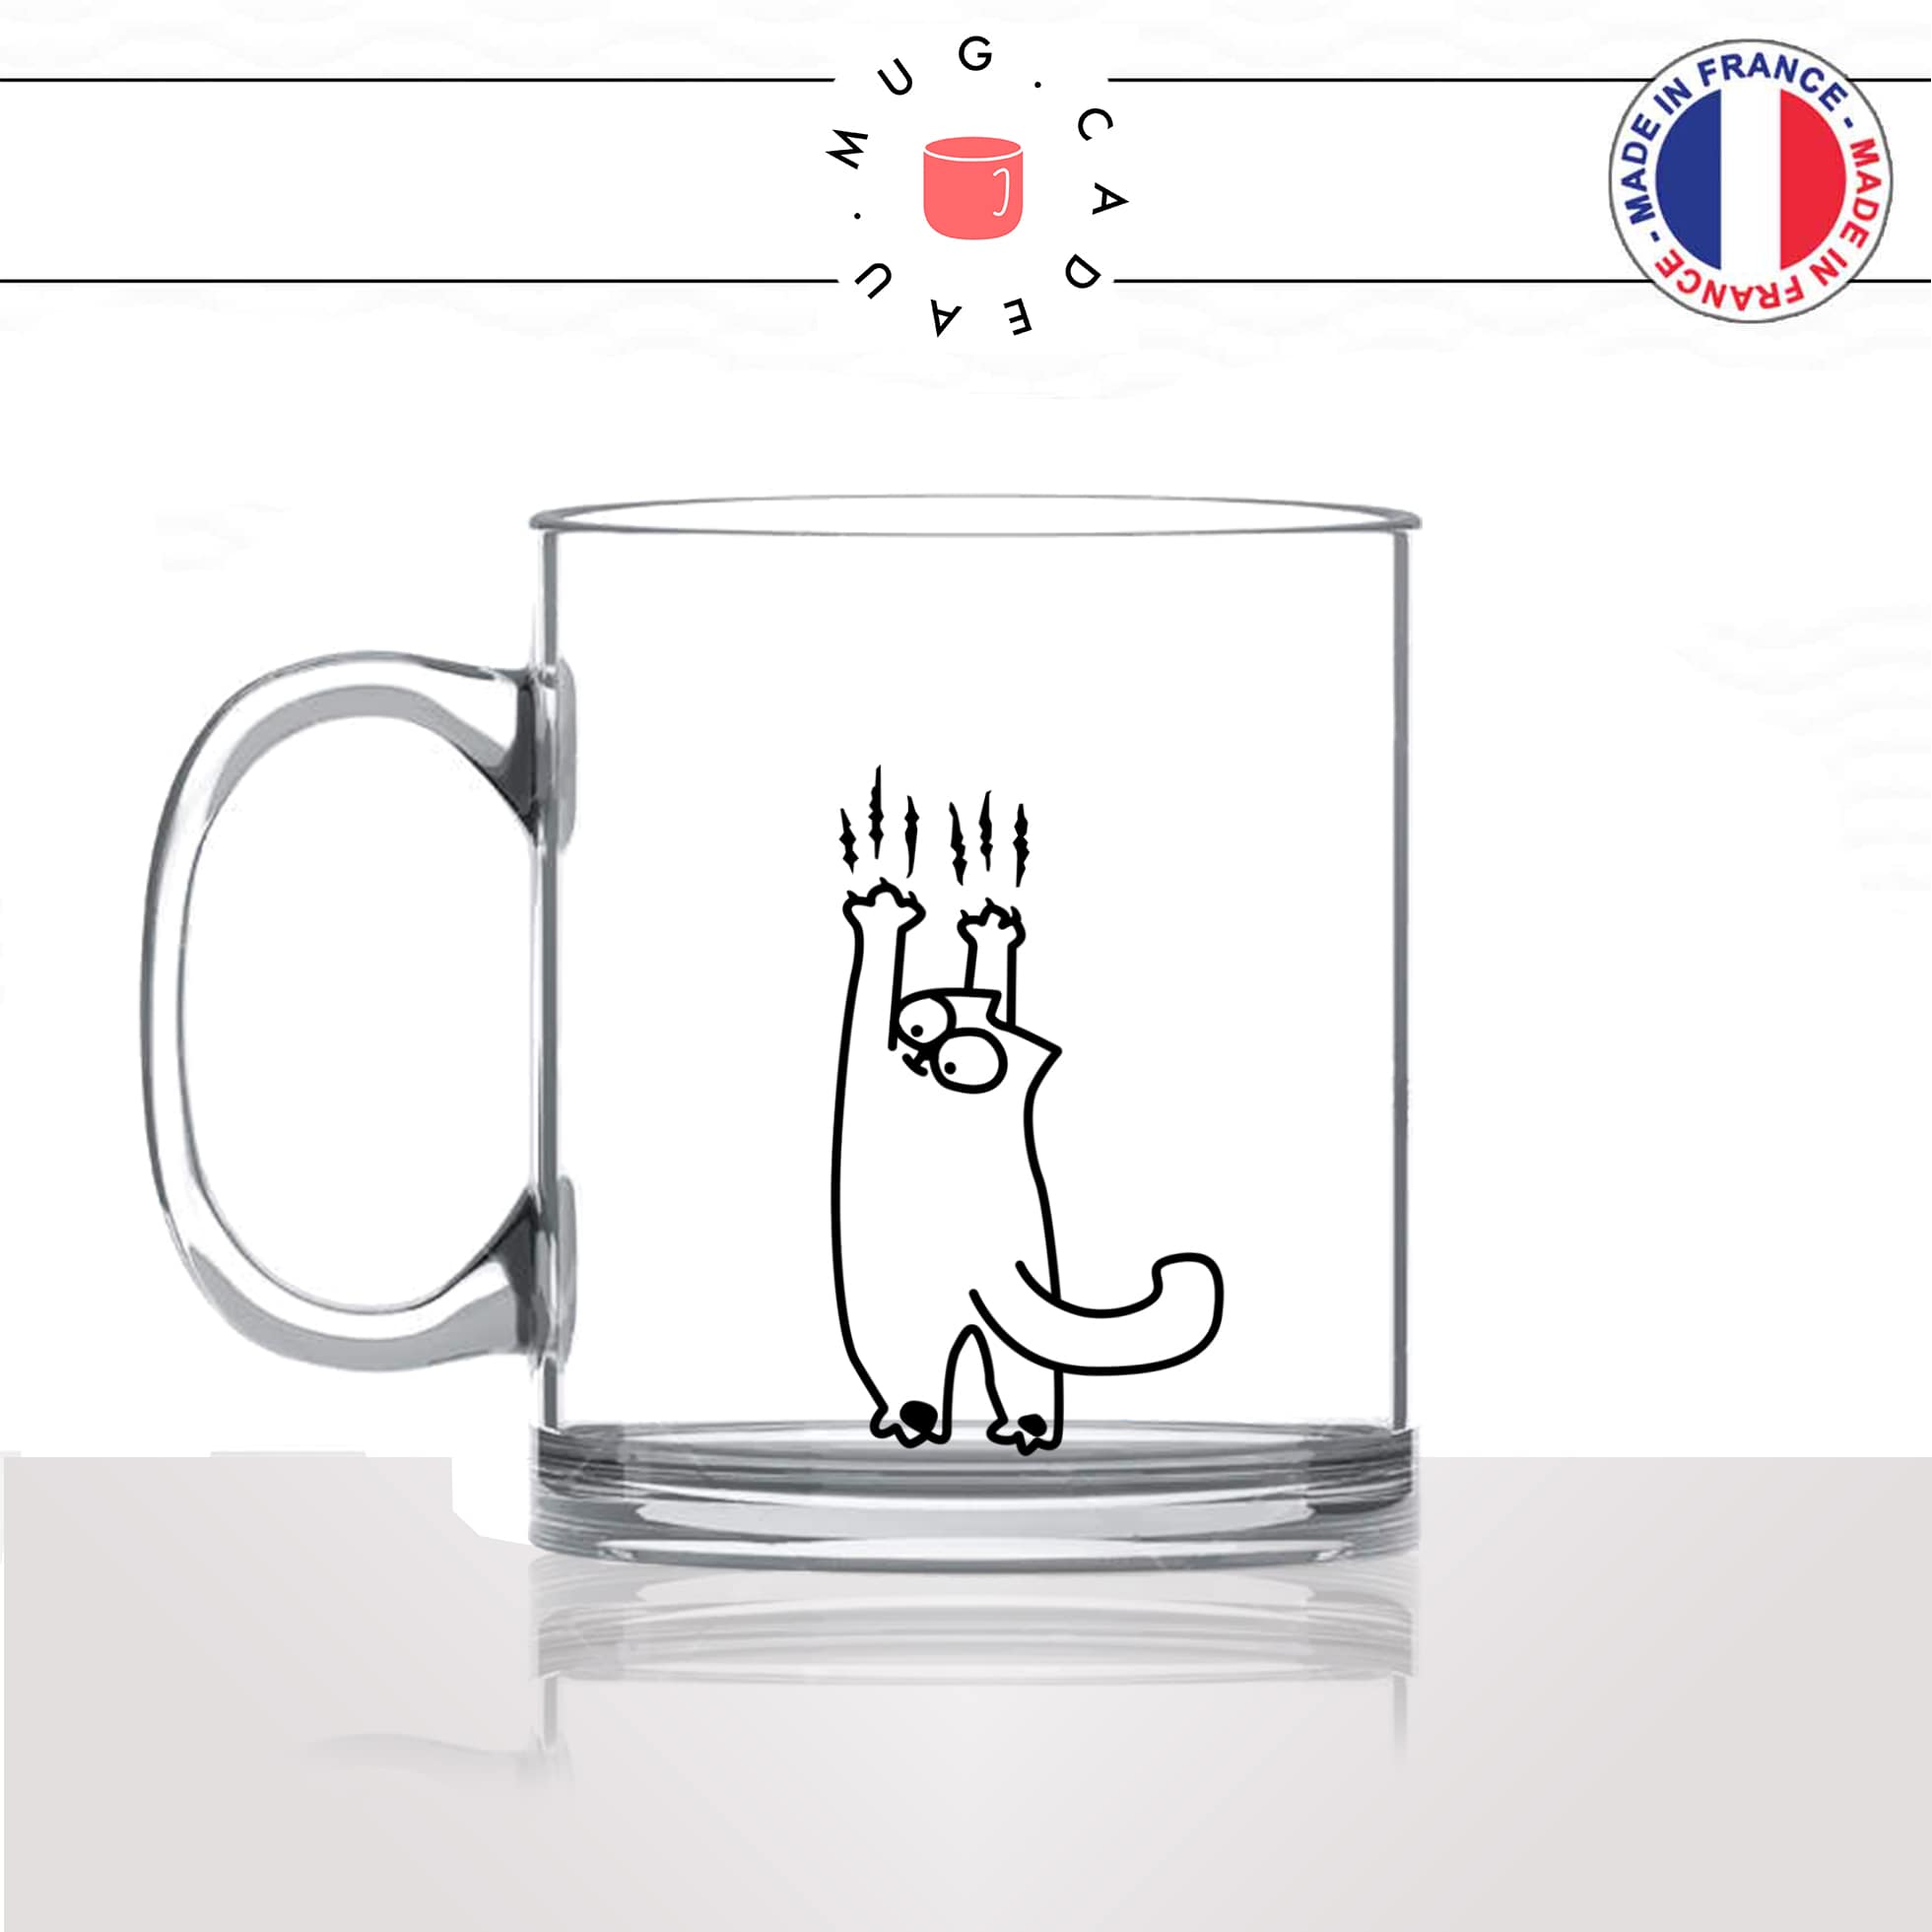 mug-tasse-en-verre-transparent-animaux-glass-griffes-griffures-chats-animal-chaton-dessin-noir-fun-café-thé-idée-cadeau-original-personnalisé-min